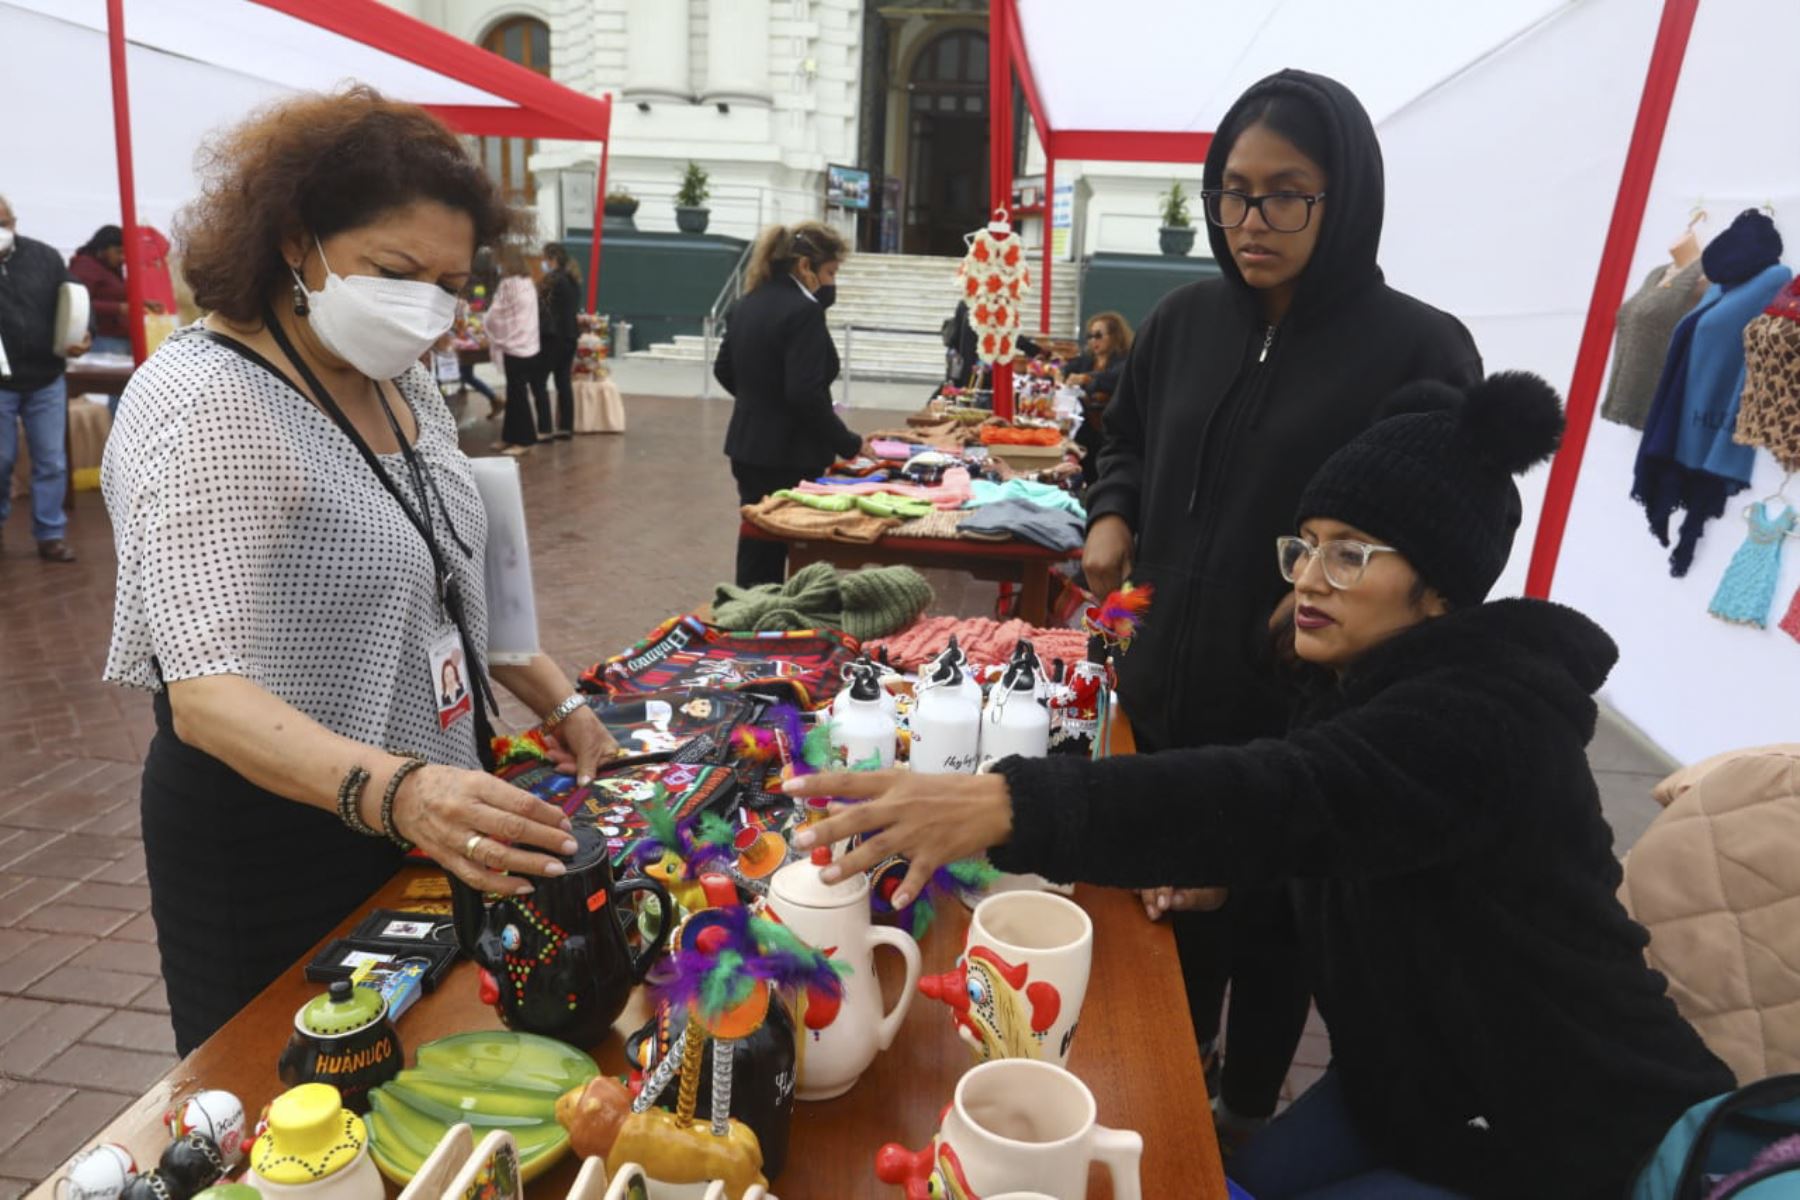 Mujeres huanuqueñas llegaron a sede del Parlamento para exhibir sus variados productos